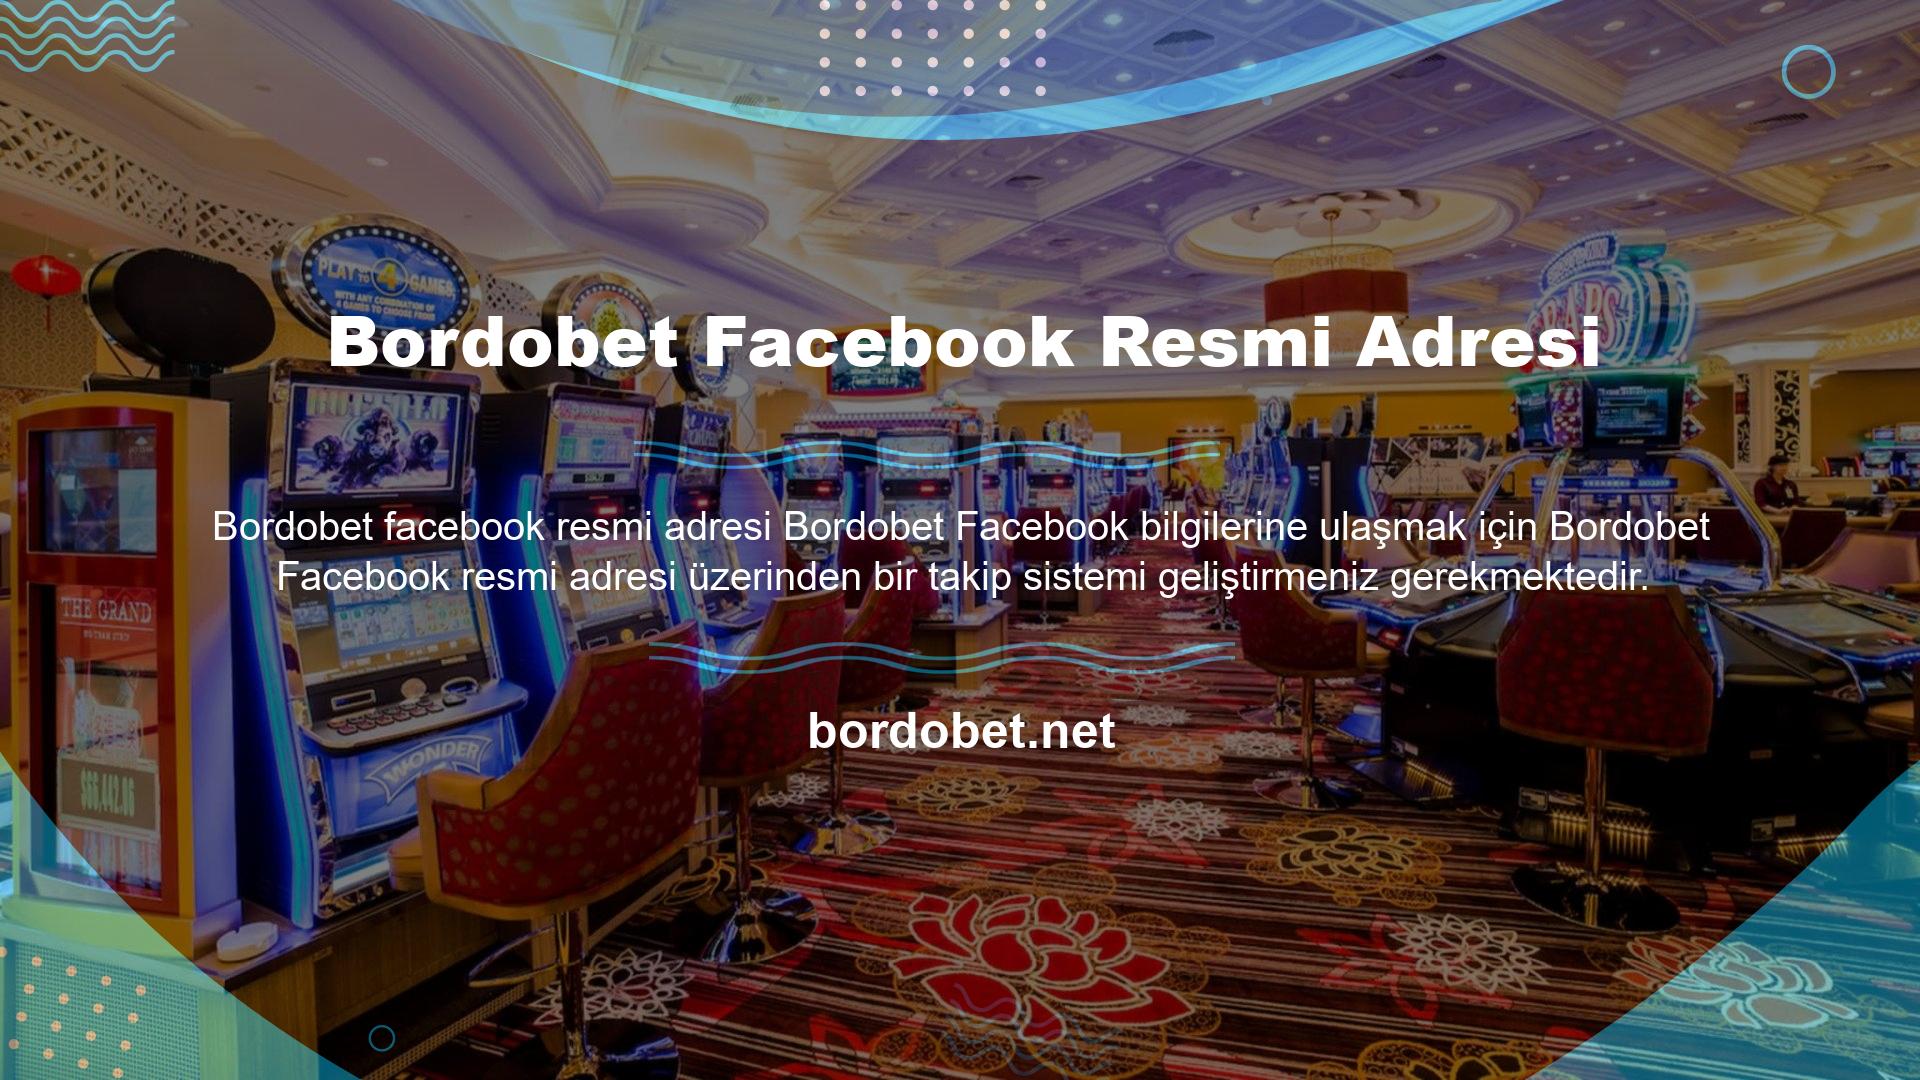 Lütfen bu web sitesinin resmi Facebook hesap adresinin Bordobet olduğunu unutmayın